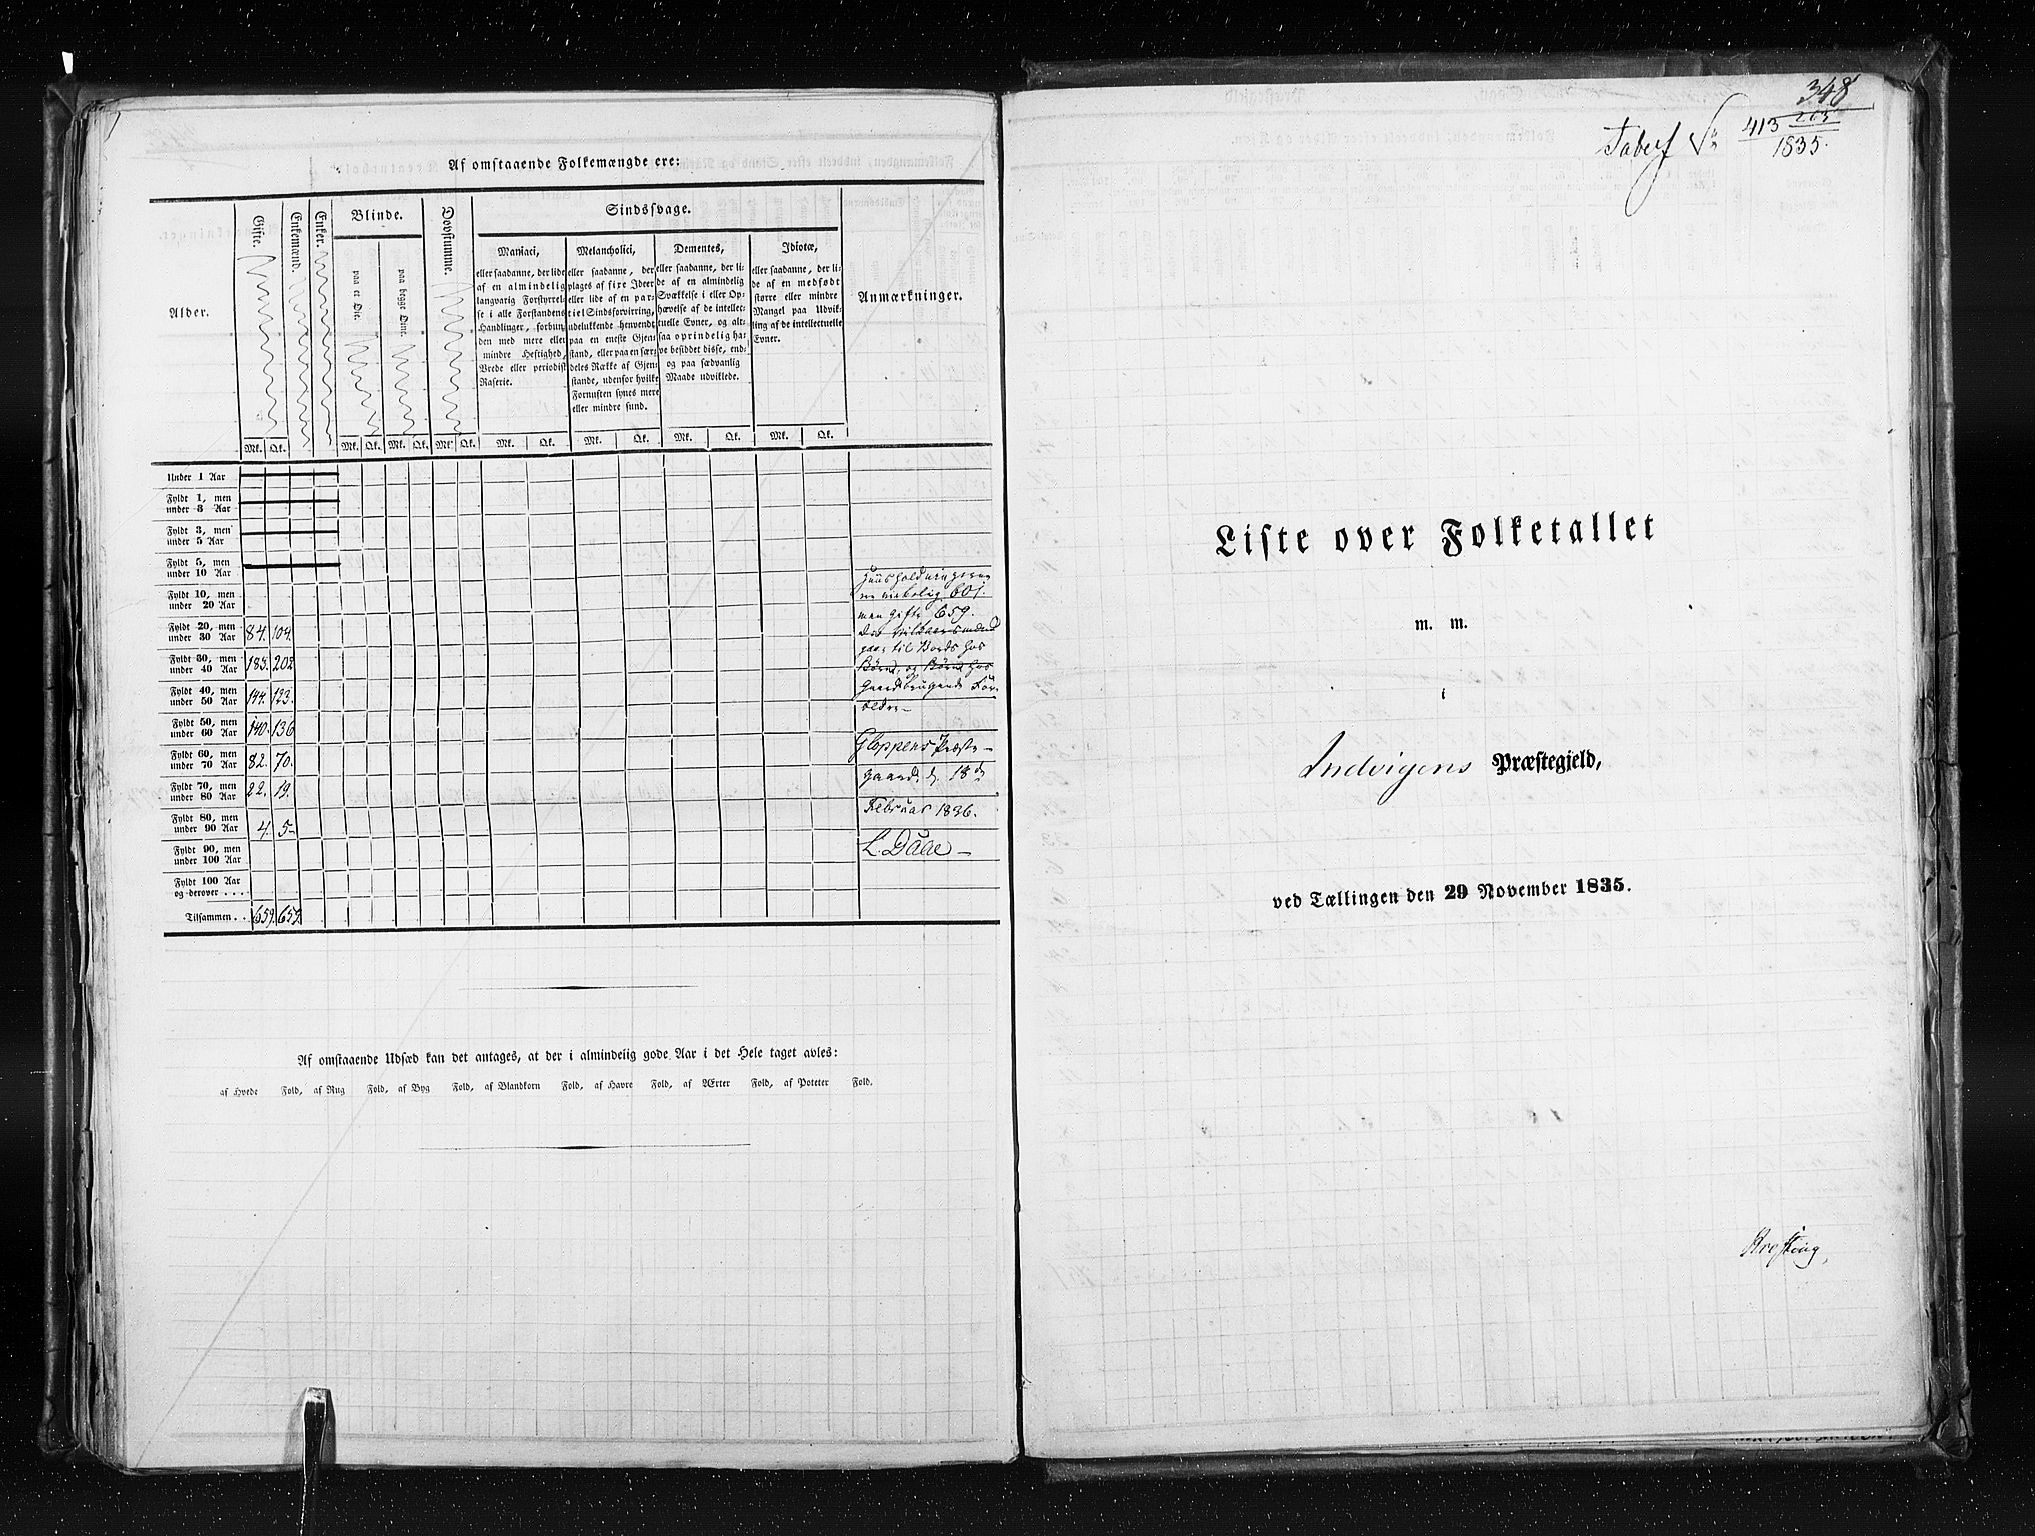 RA, Census 1835, vol. 7: Søndre Bergenhus amt og Nordre Bergenhus amt, 1835, p. 348